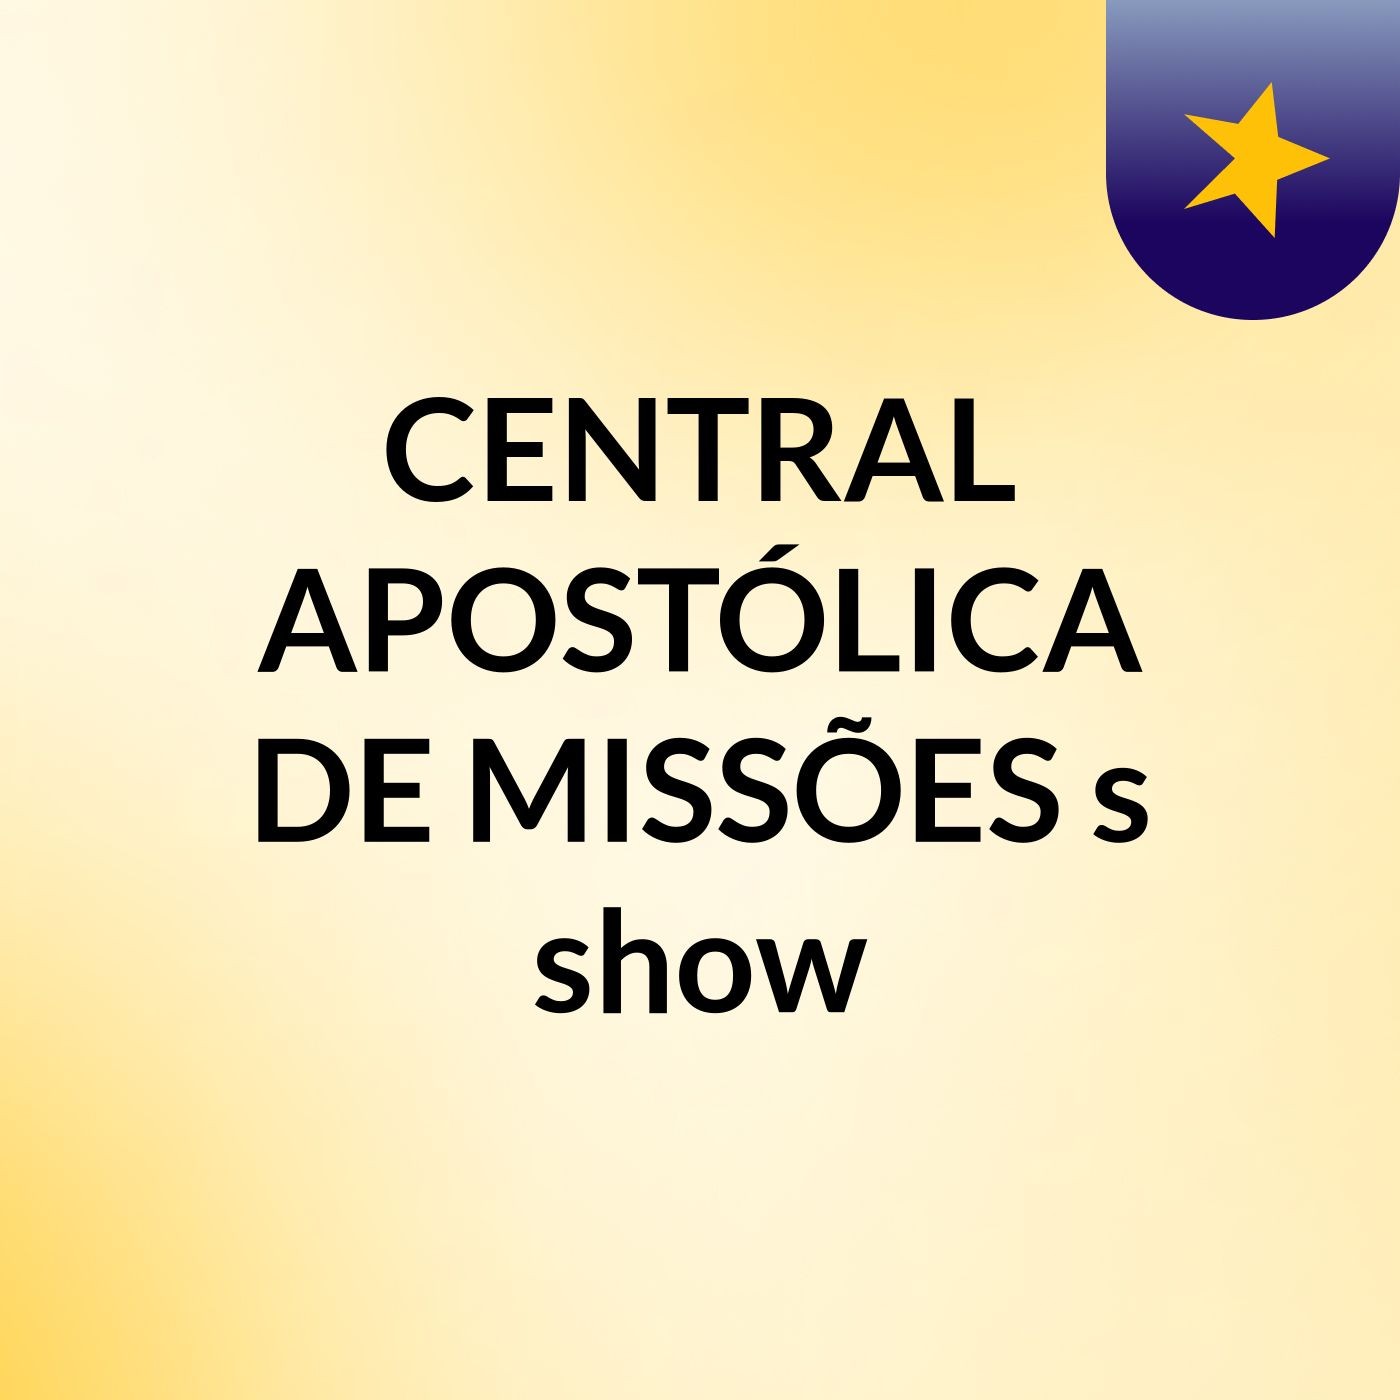 CENTRAL APOSTÓLICA DE MISSÕES's show